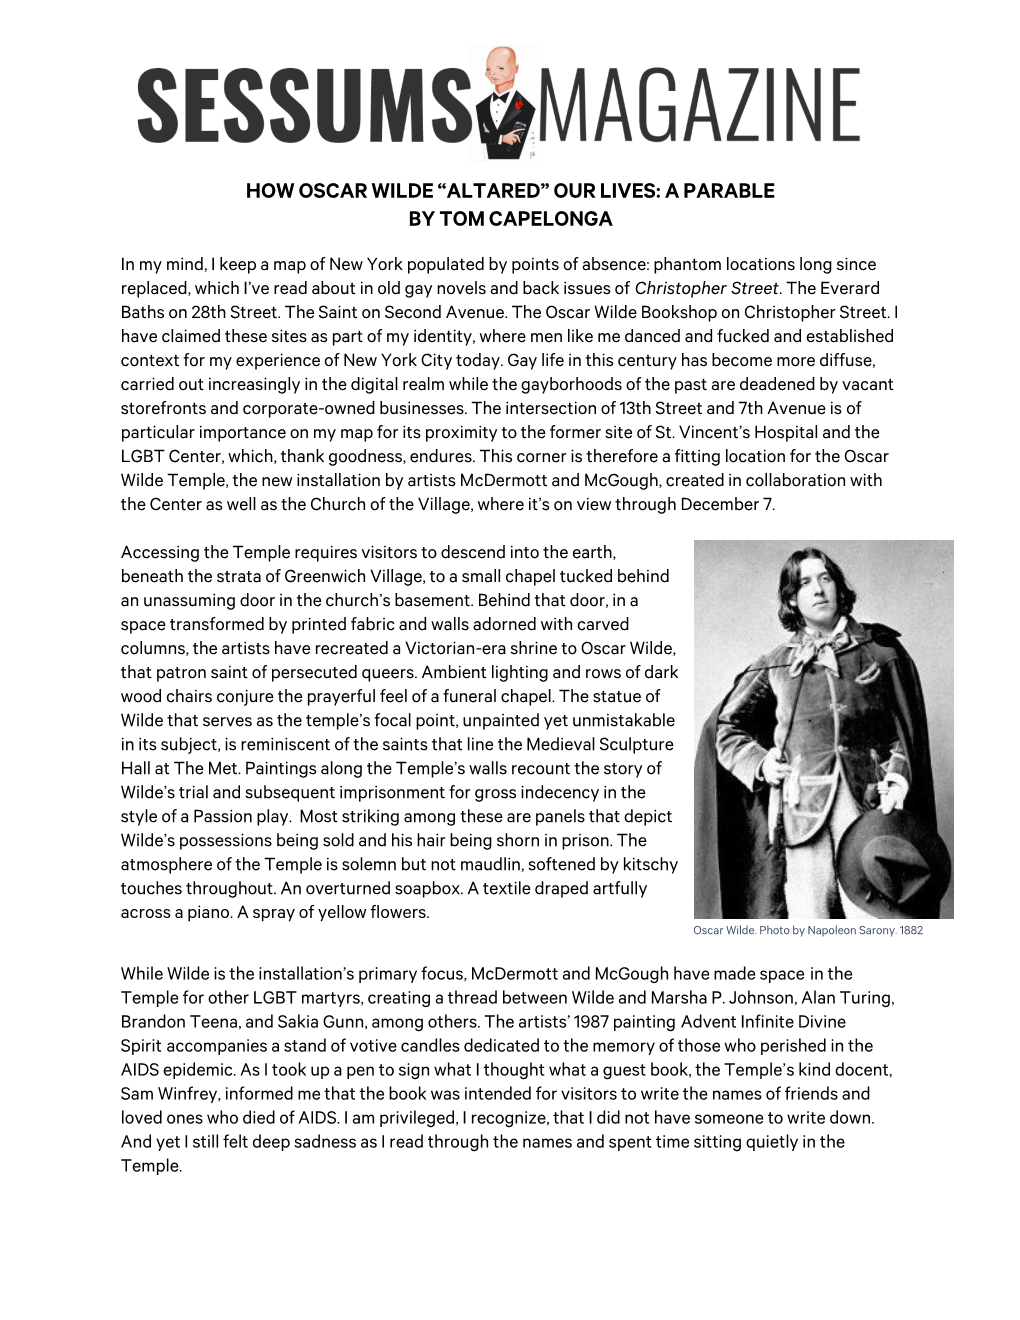 How Oscar Wilde “Altared” Our Lives: a Parable by Tom Capelonga